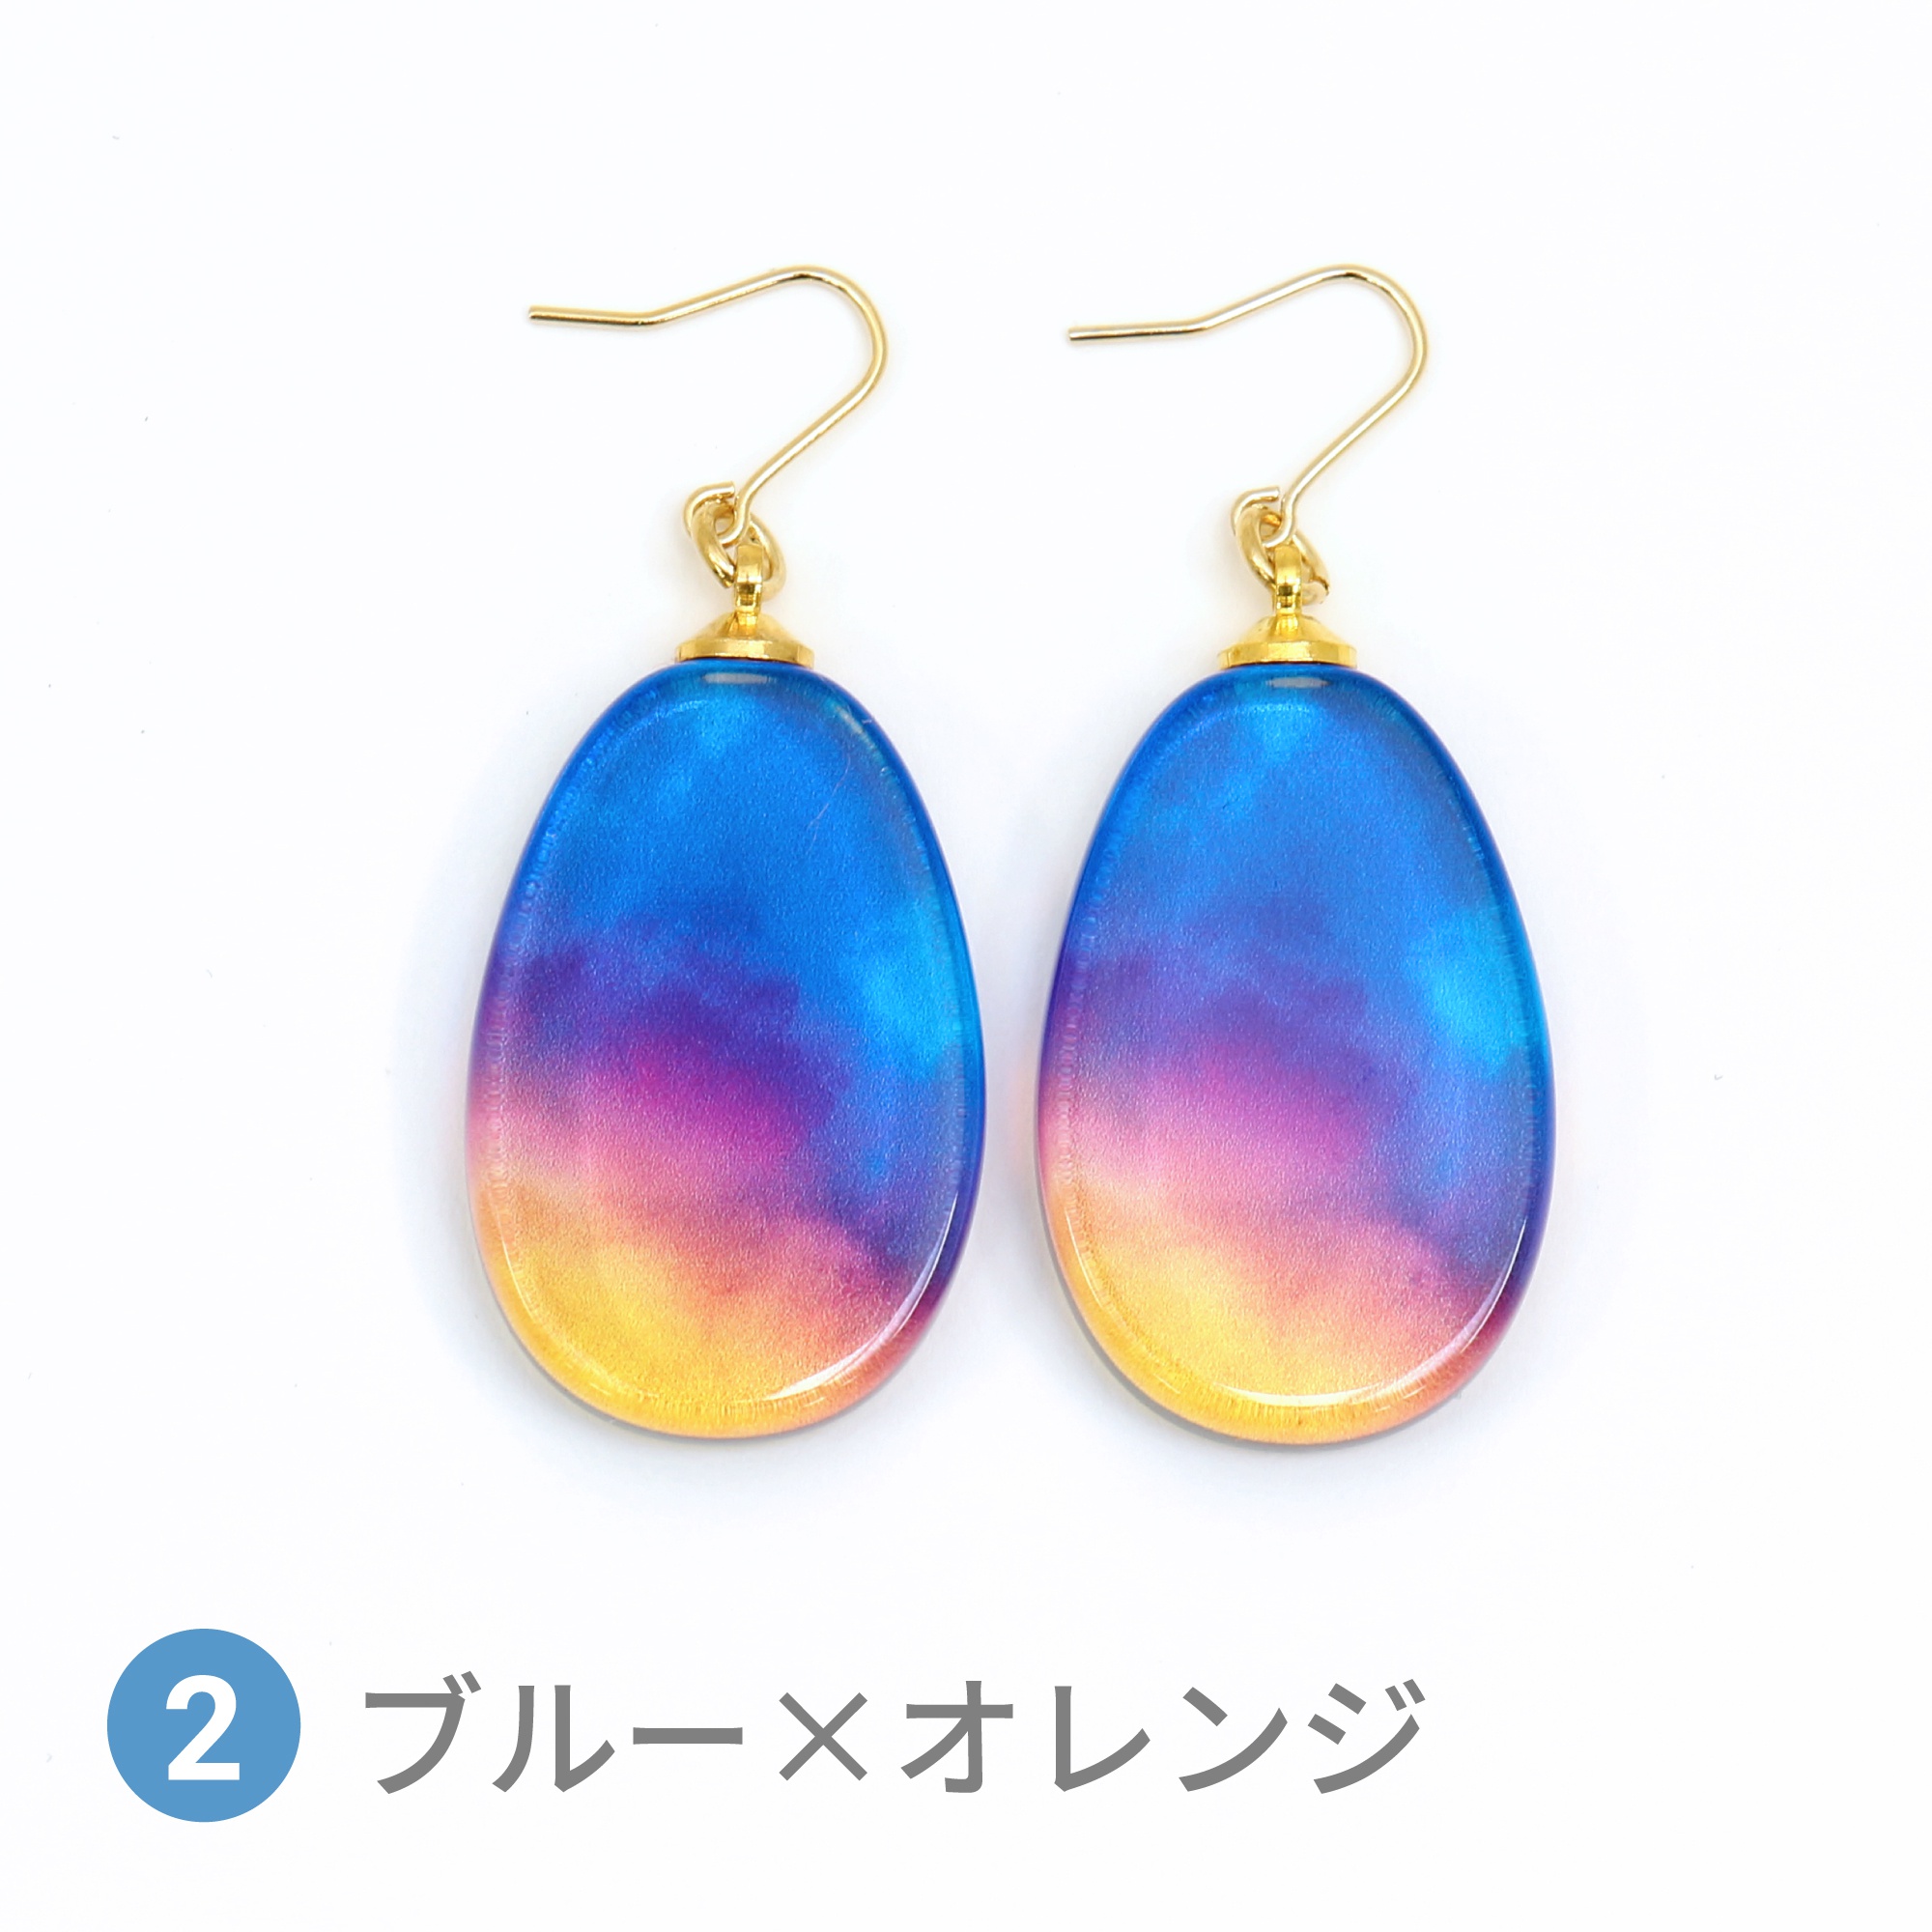 Glass accessories Pierced Earring AURORA blue & orange drop shape